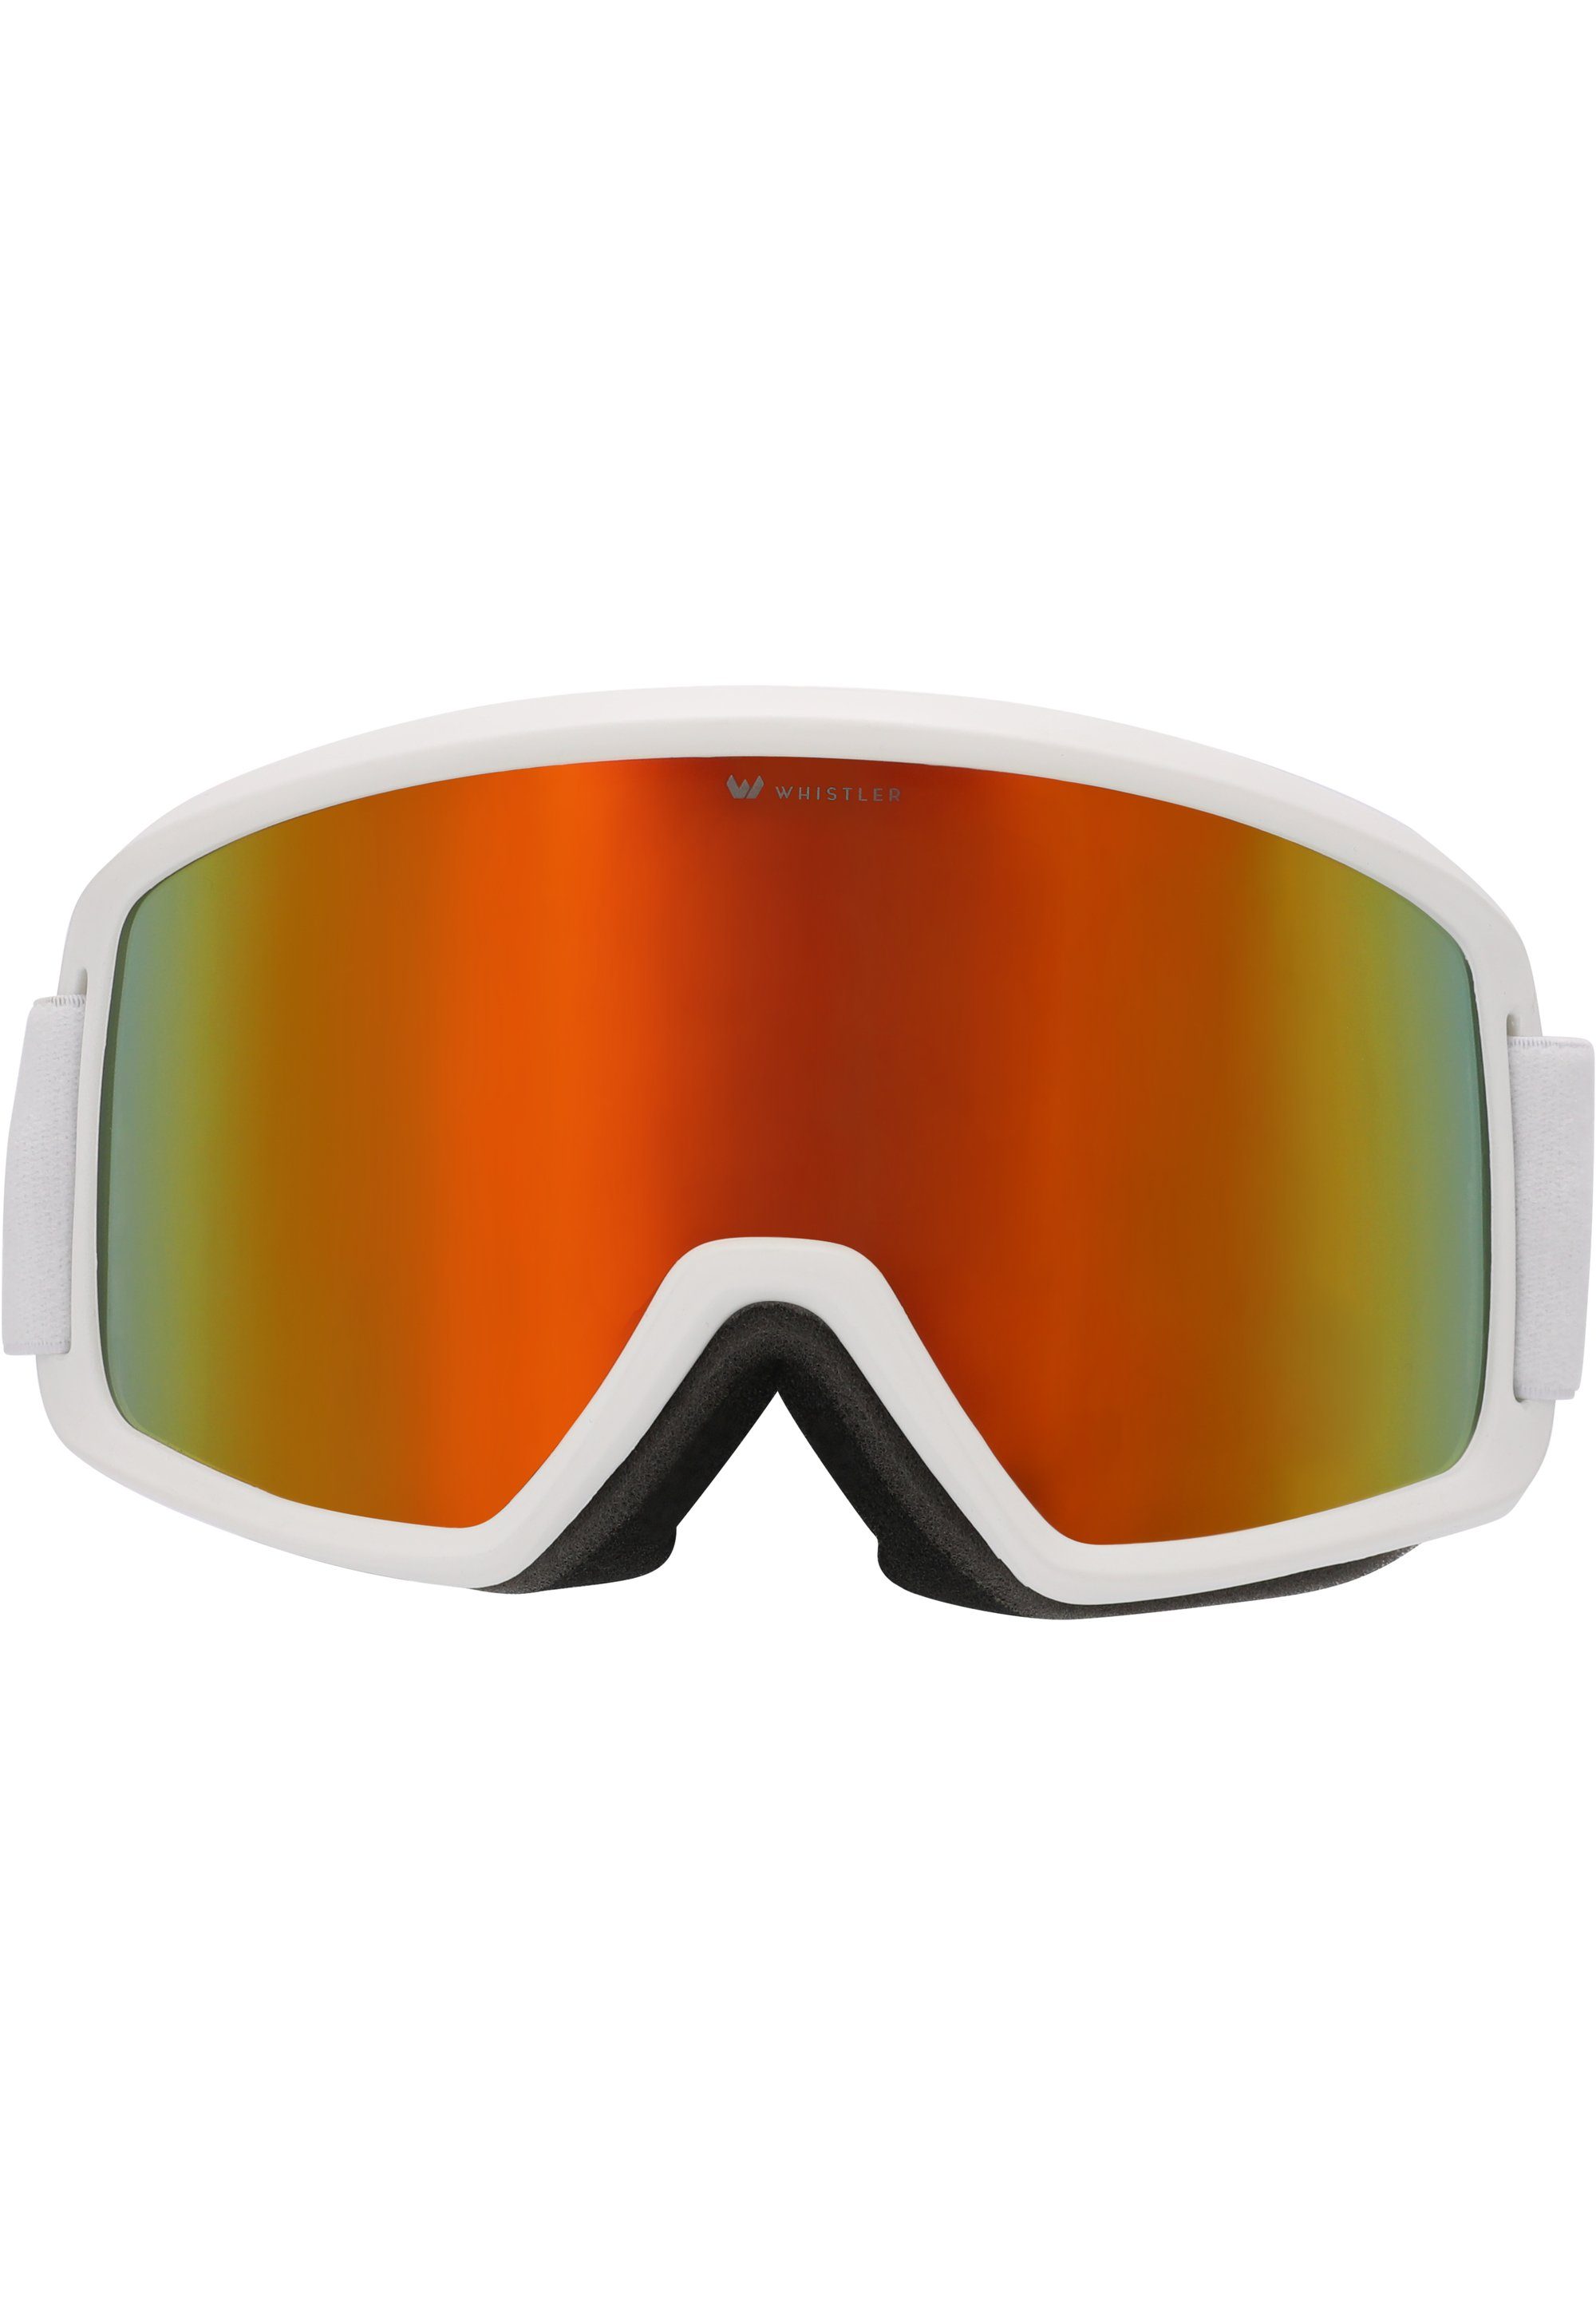 WHISTLER Skibrille WS5150 OTG, mit praktischer Anti-Beschlag-Funktion weiß